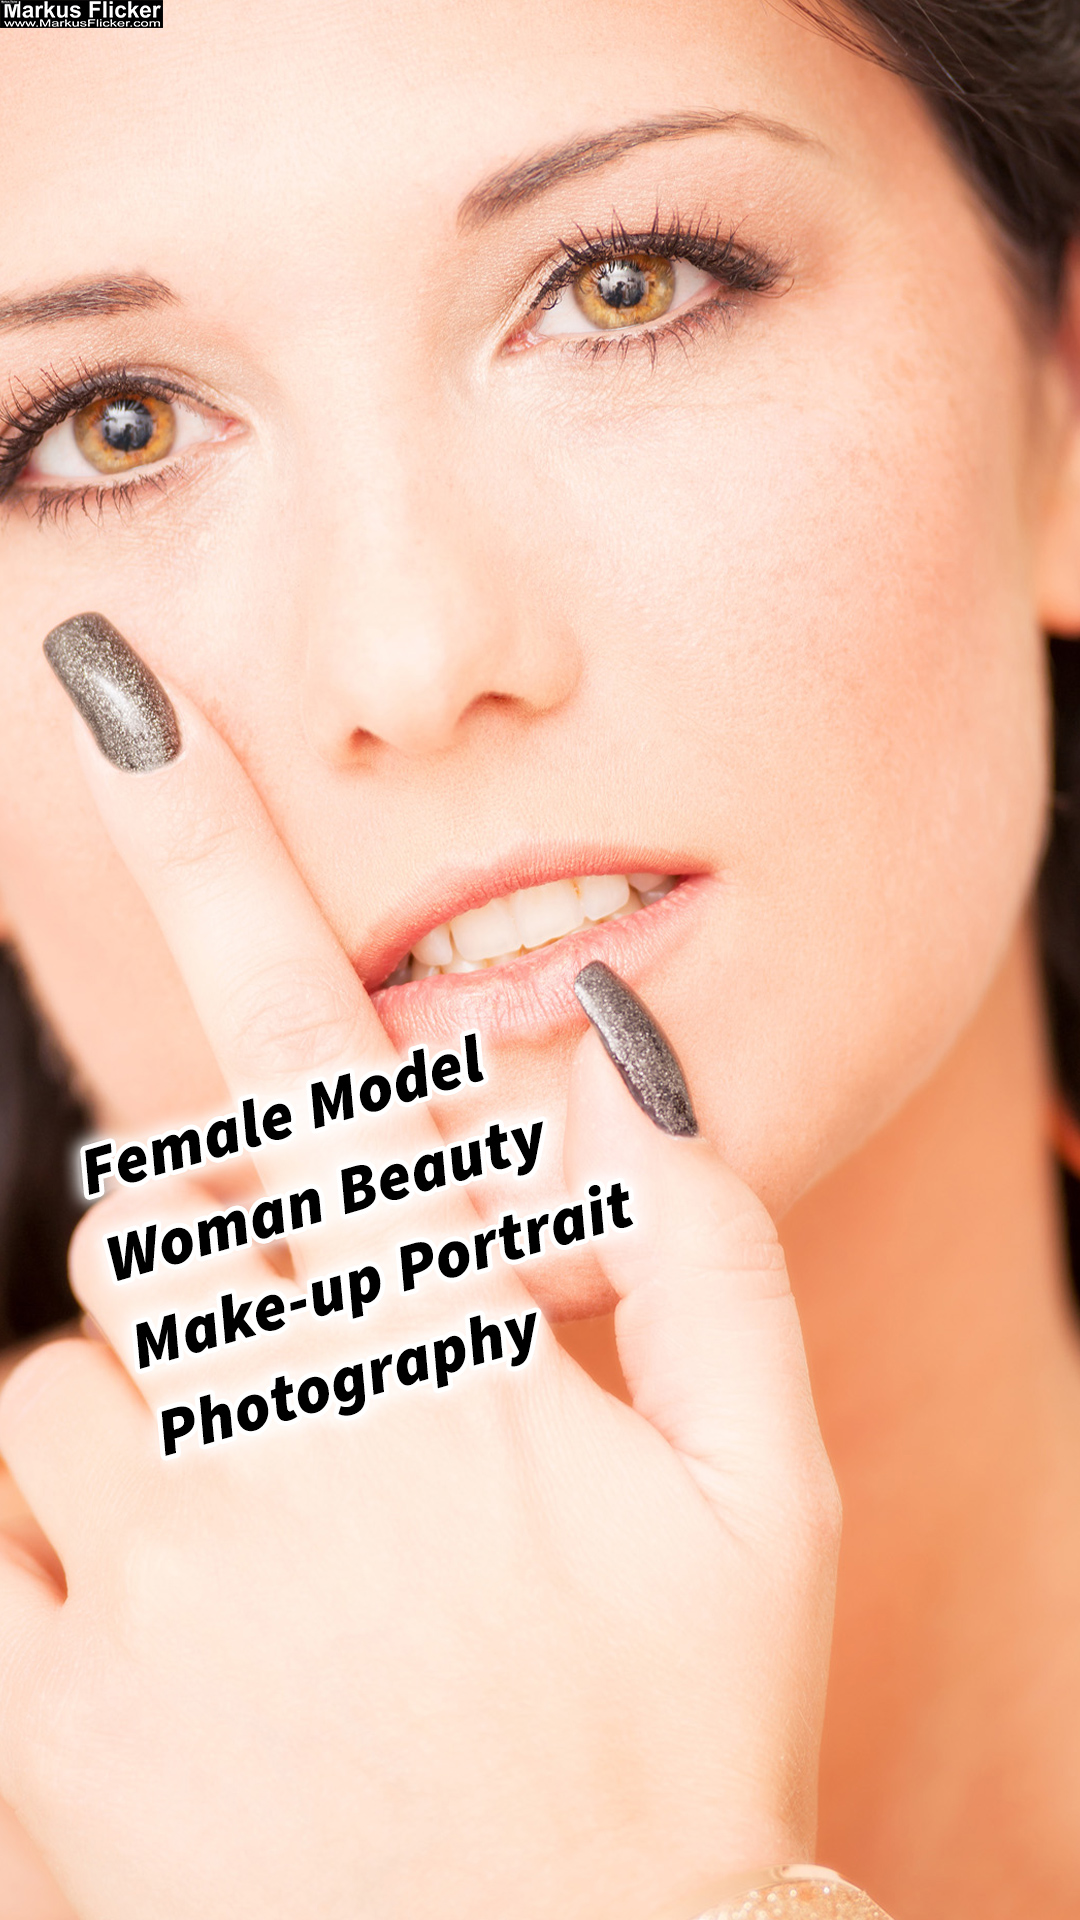 Female Model Conny Woman Beauty Make-up Close Up Portrait Photography inkl. 27 spezielle Fototipps für die Nahaufnahme-Portraitfotografie von weiblichen Models